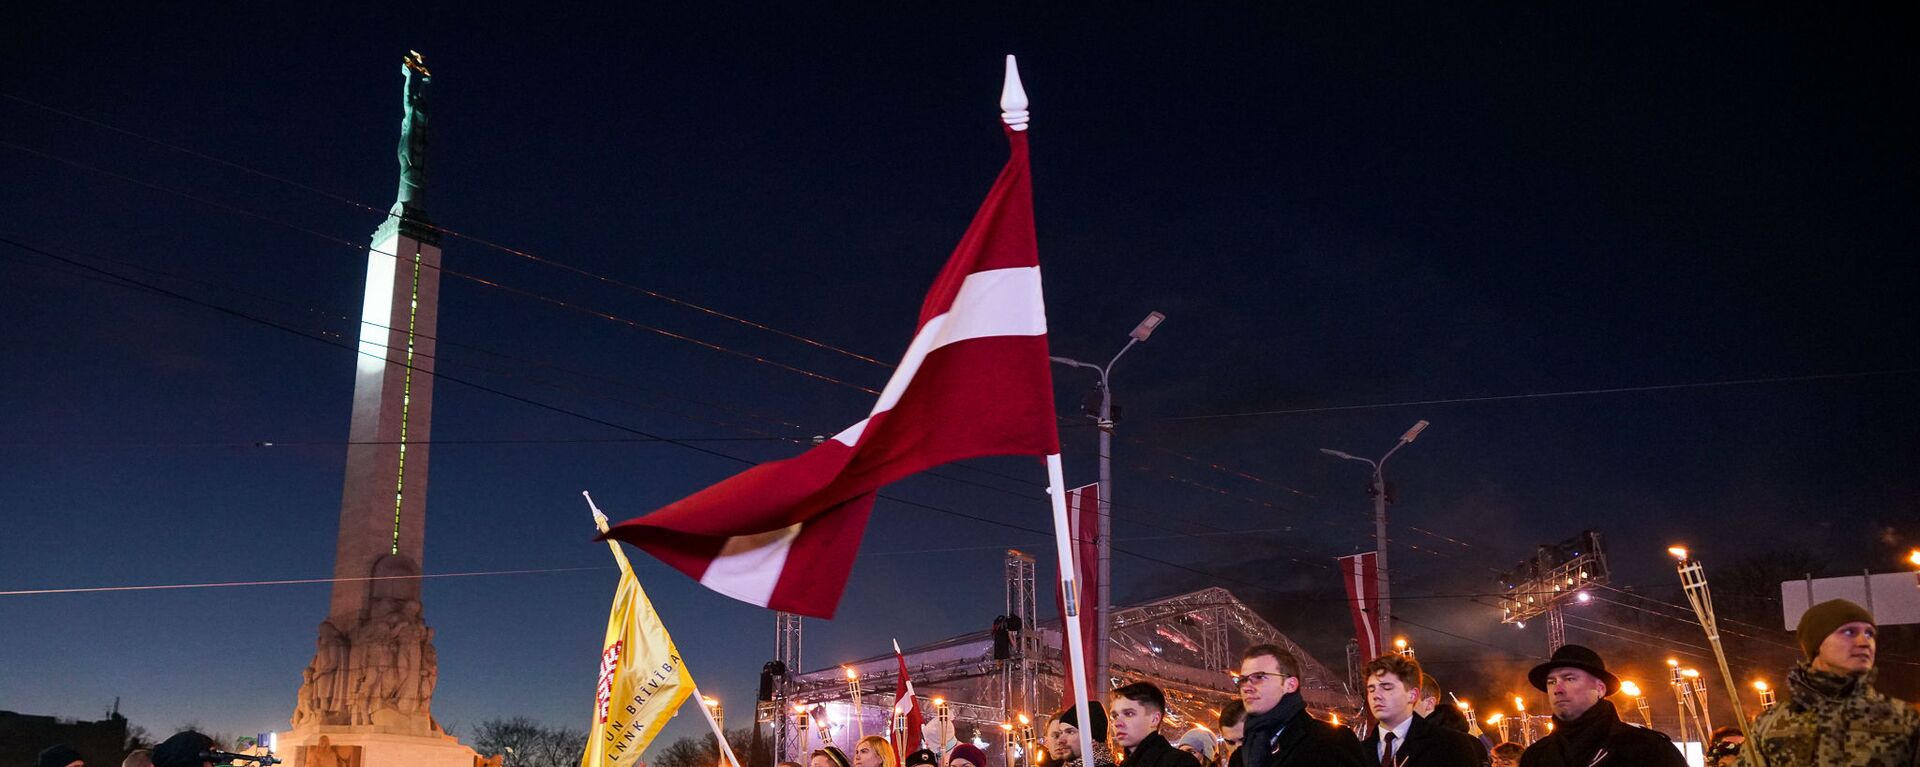 Факельное шествие 18 ноября в Риге - Sputnik Latvija, 1920, 27.01.2021